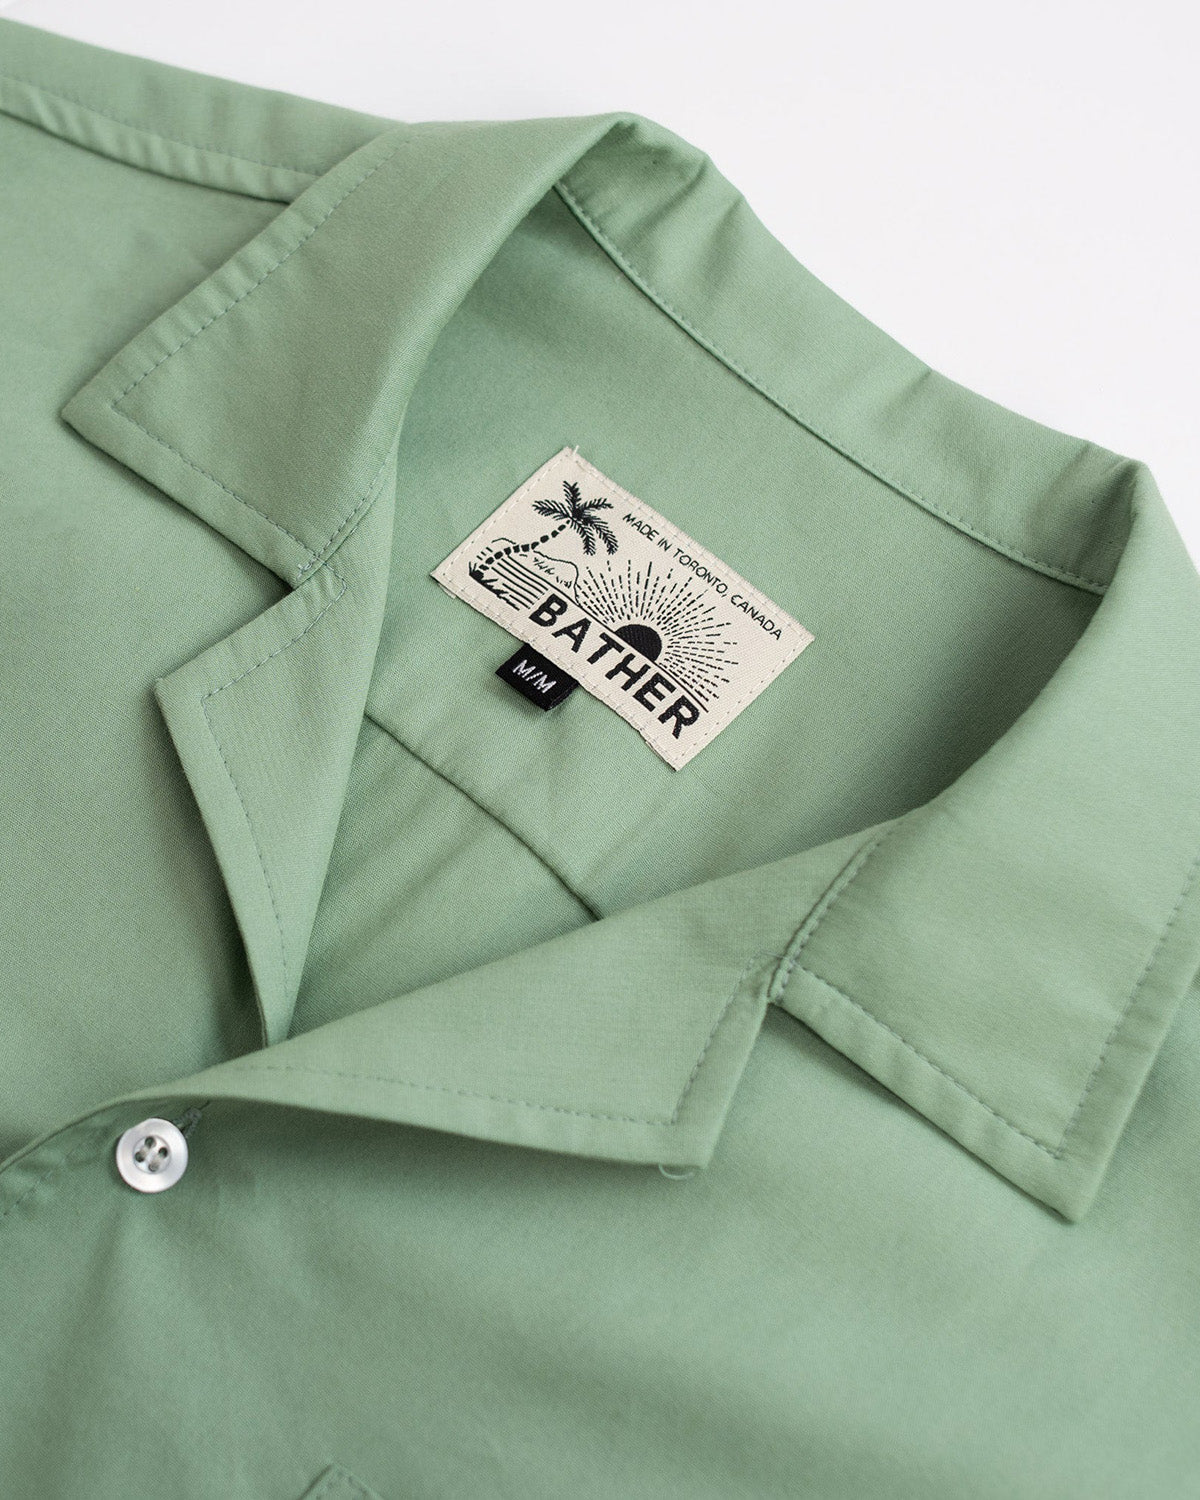 sage green Bather camp shirt close up